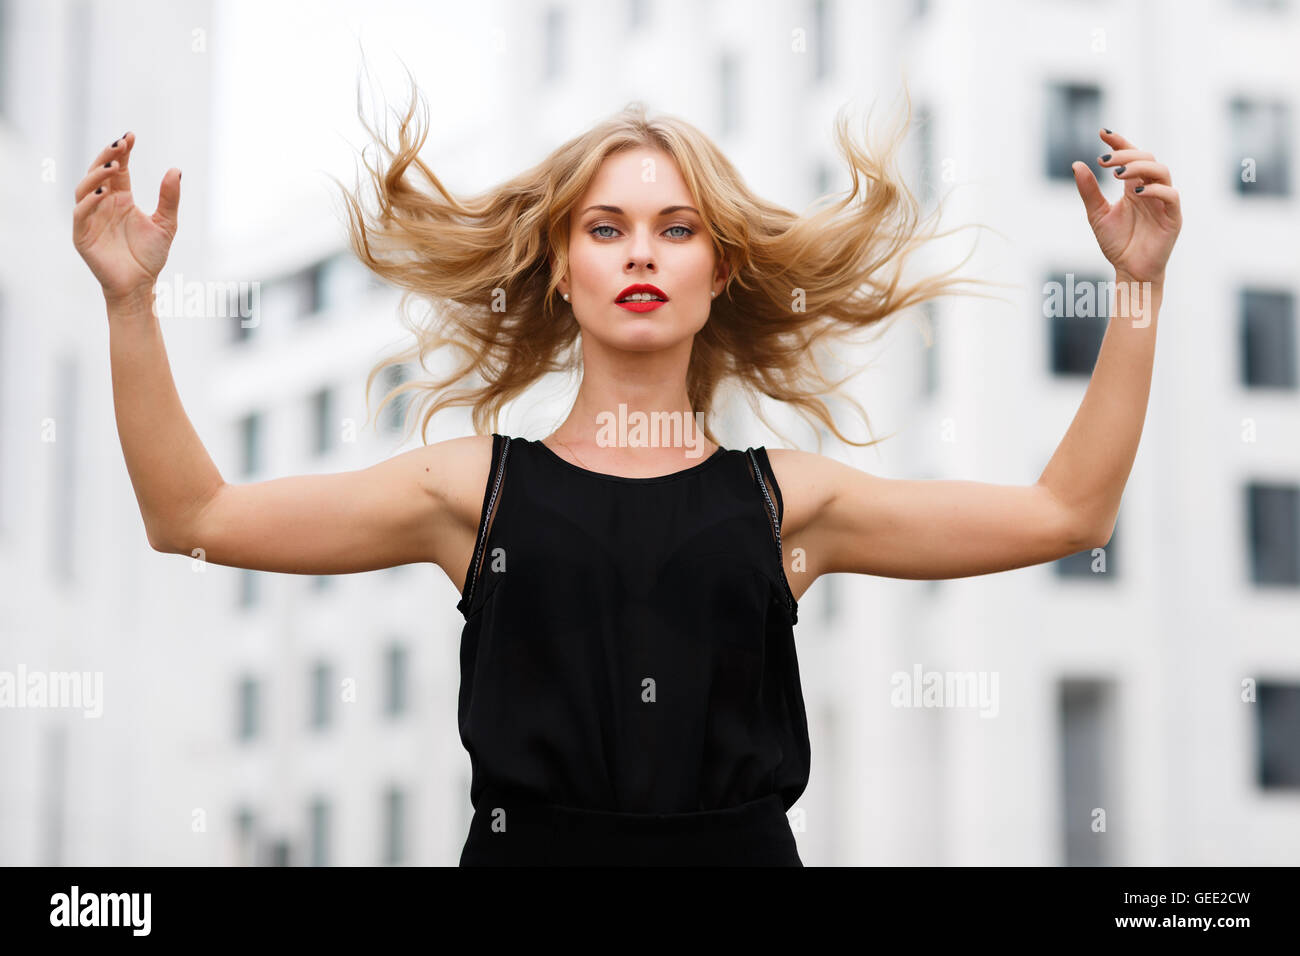 Porträt der jungen Frau in Bewegung, gestikulieren mit fliegenden Haare Stockfoto